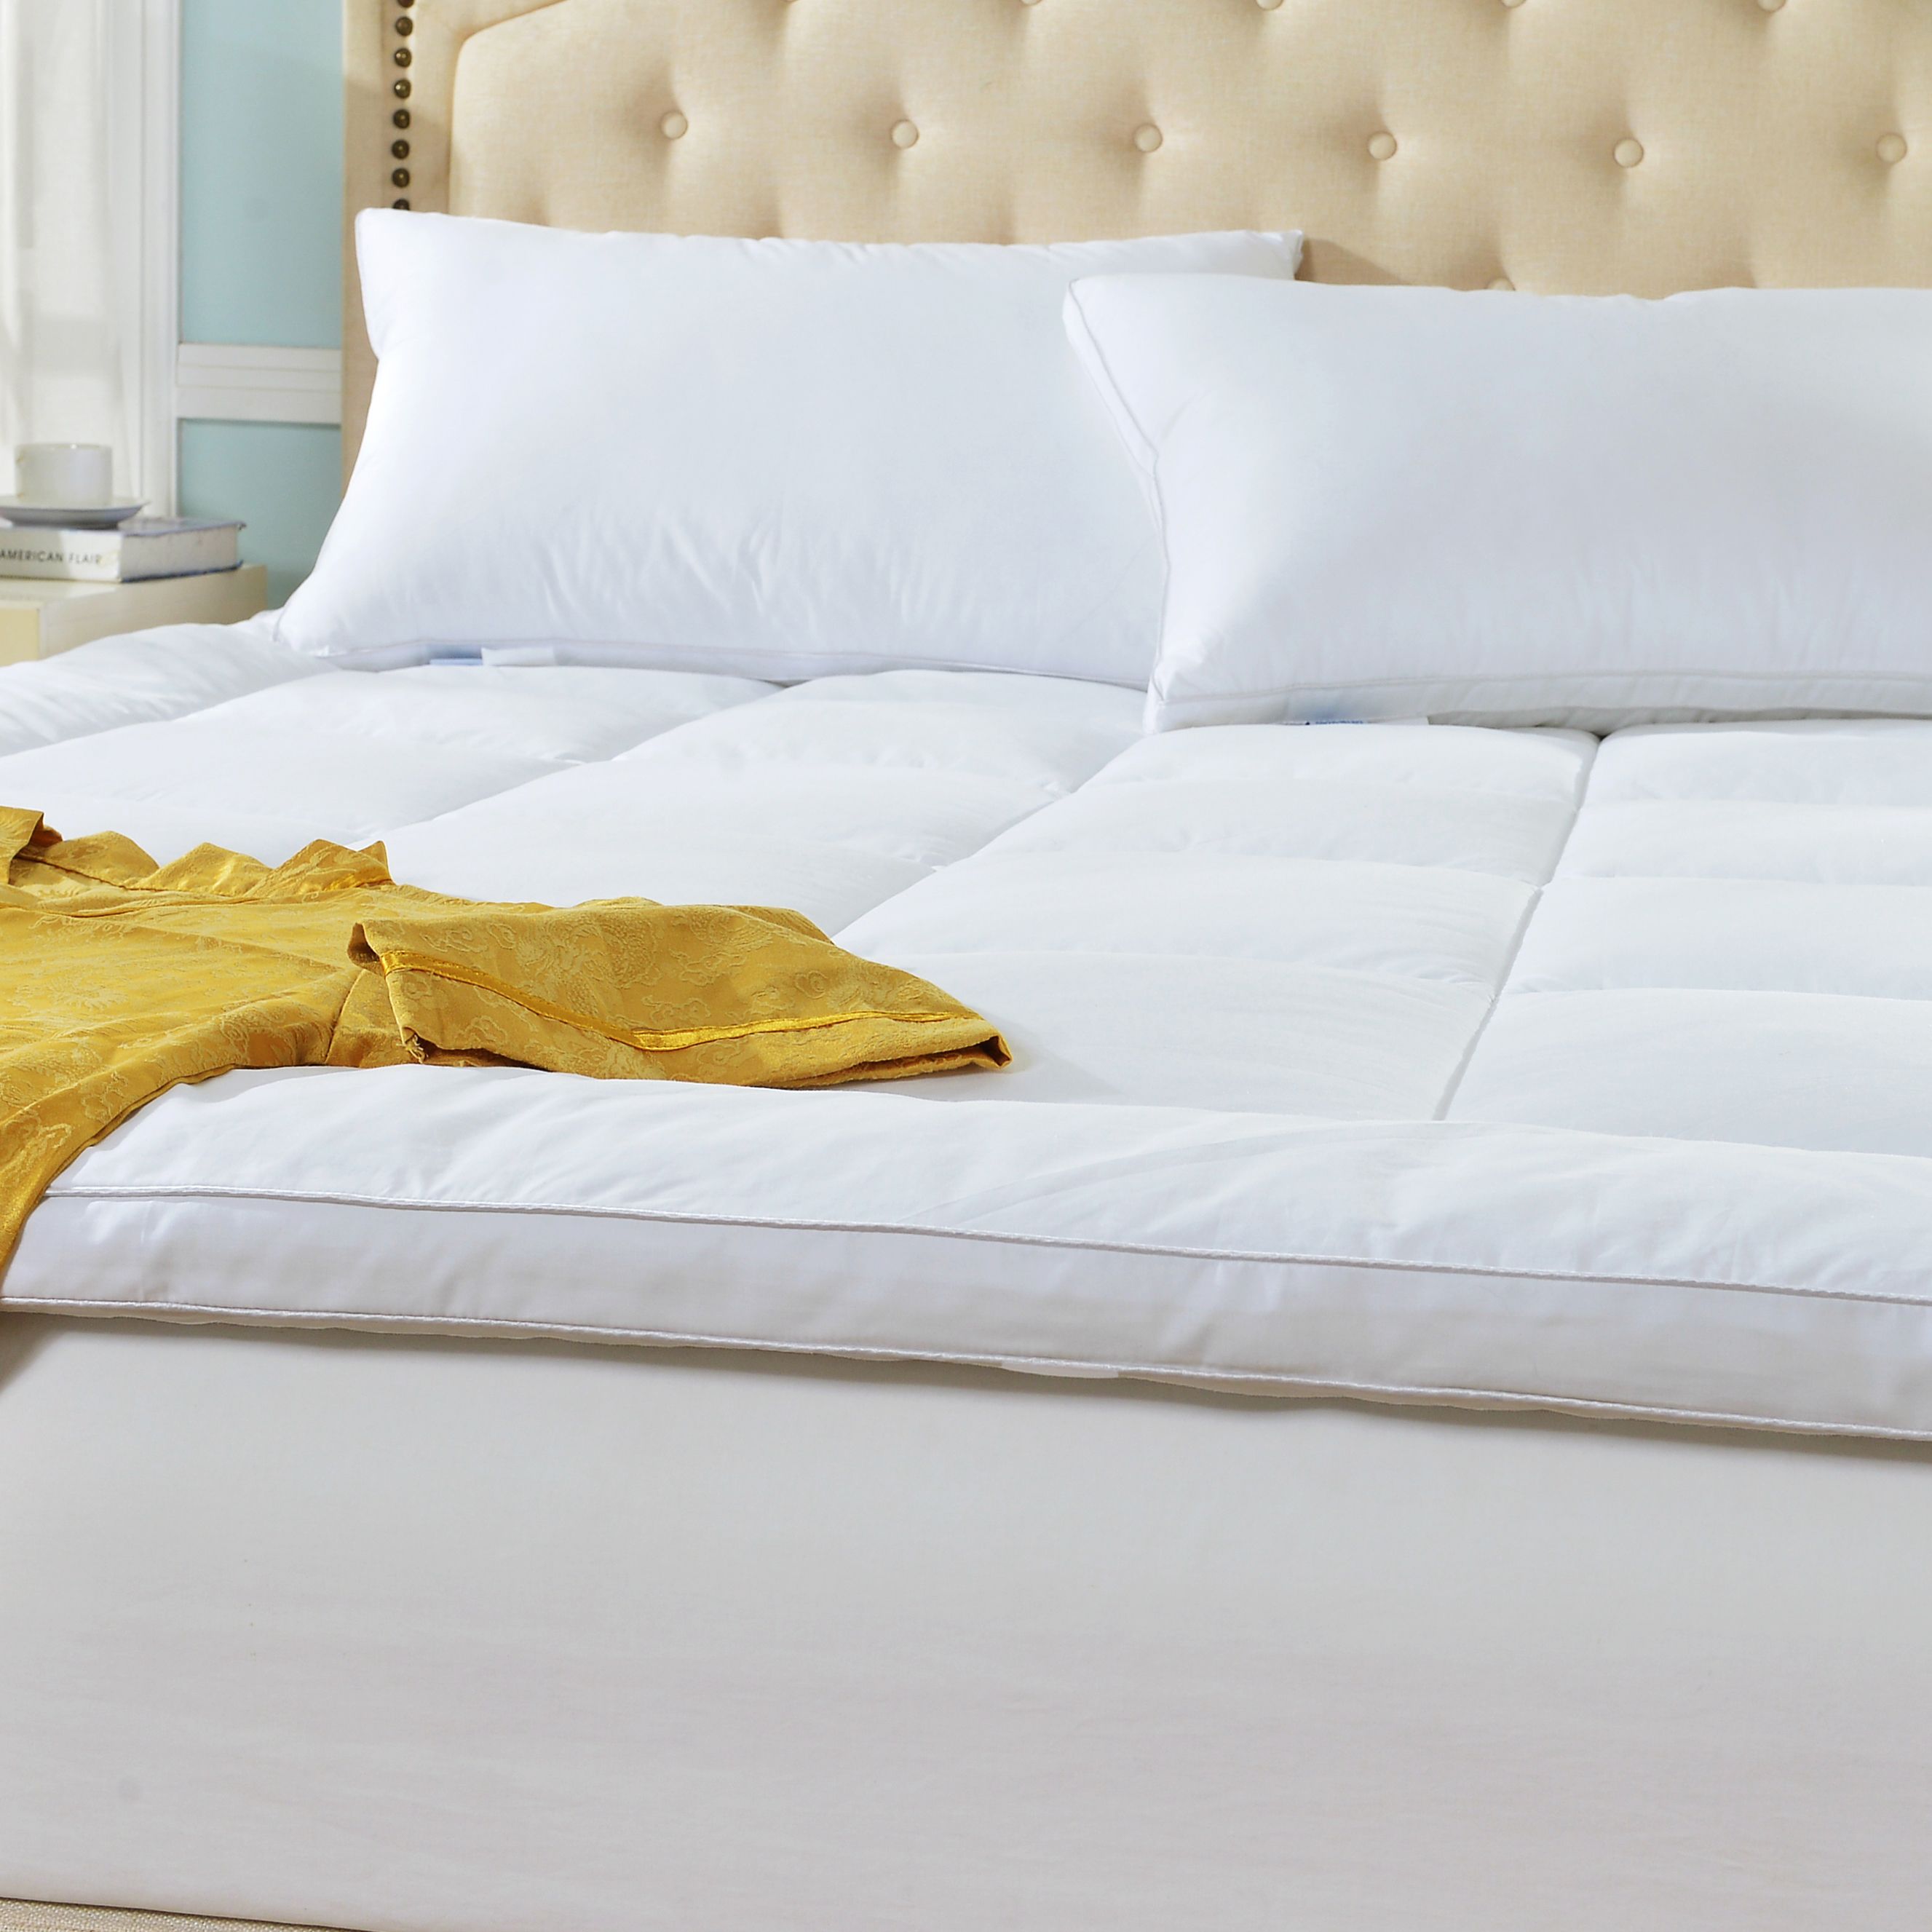 客房保护垫/酒店保护垫/酒店床品细节图